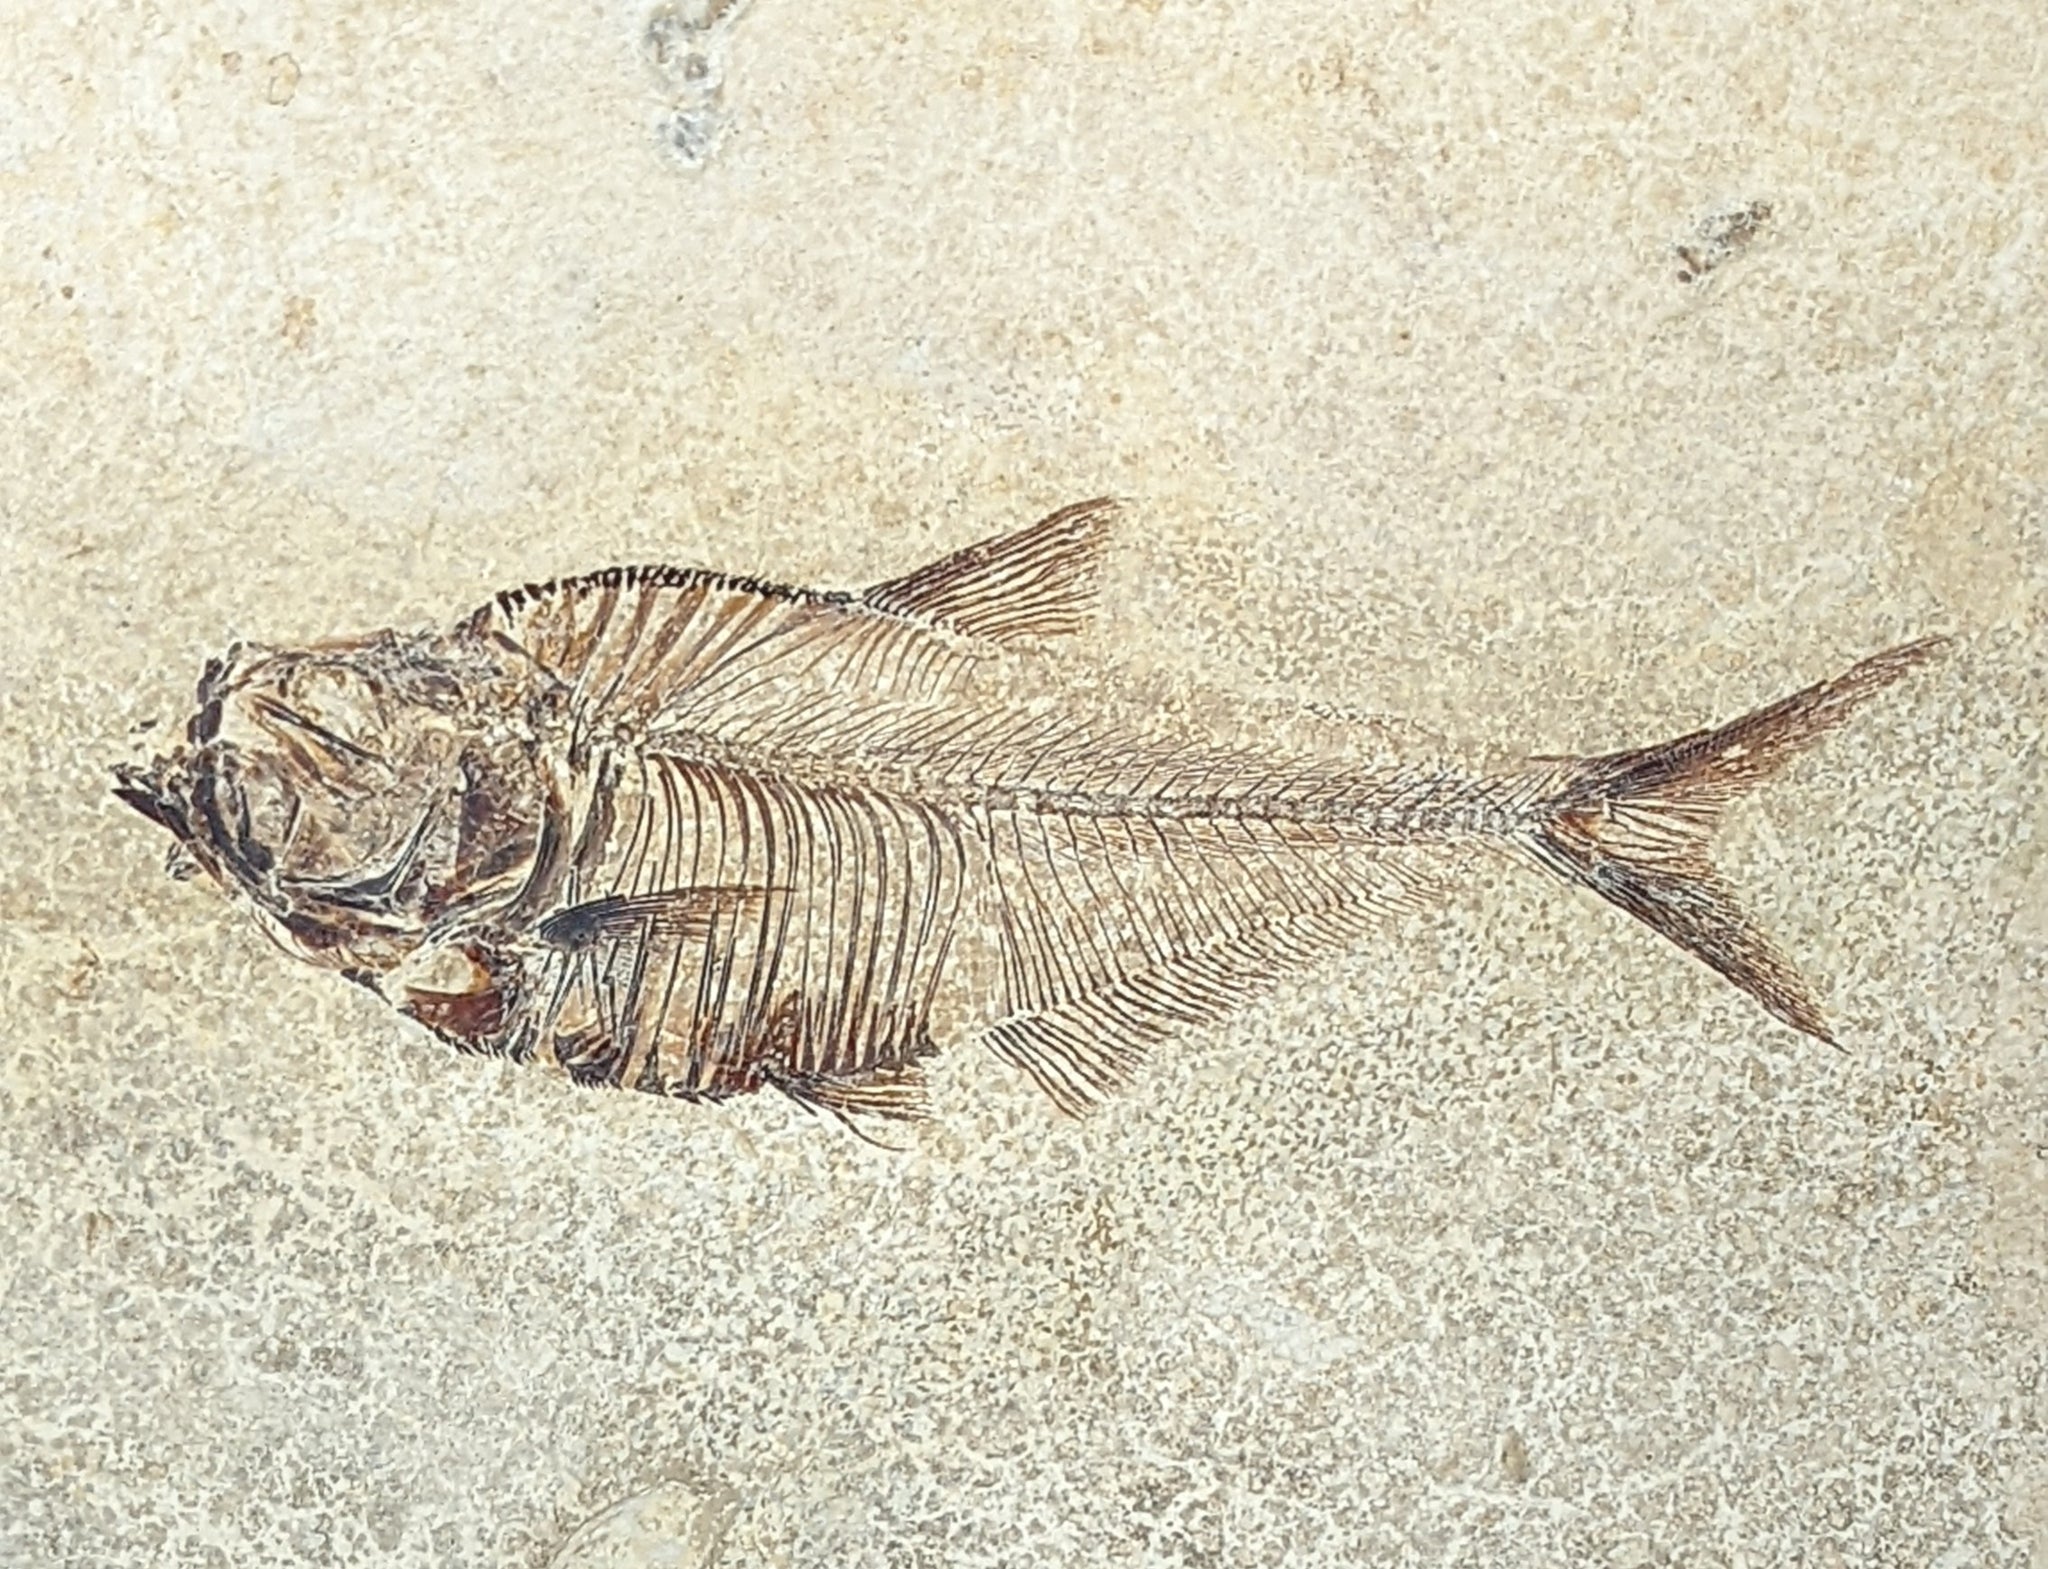 Diplomystus Dentataus Framed Fish Fossil